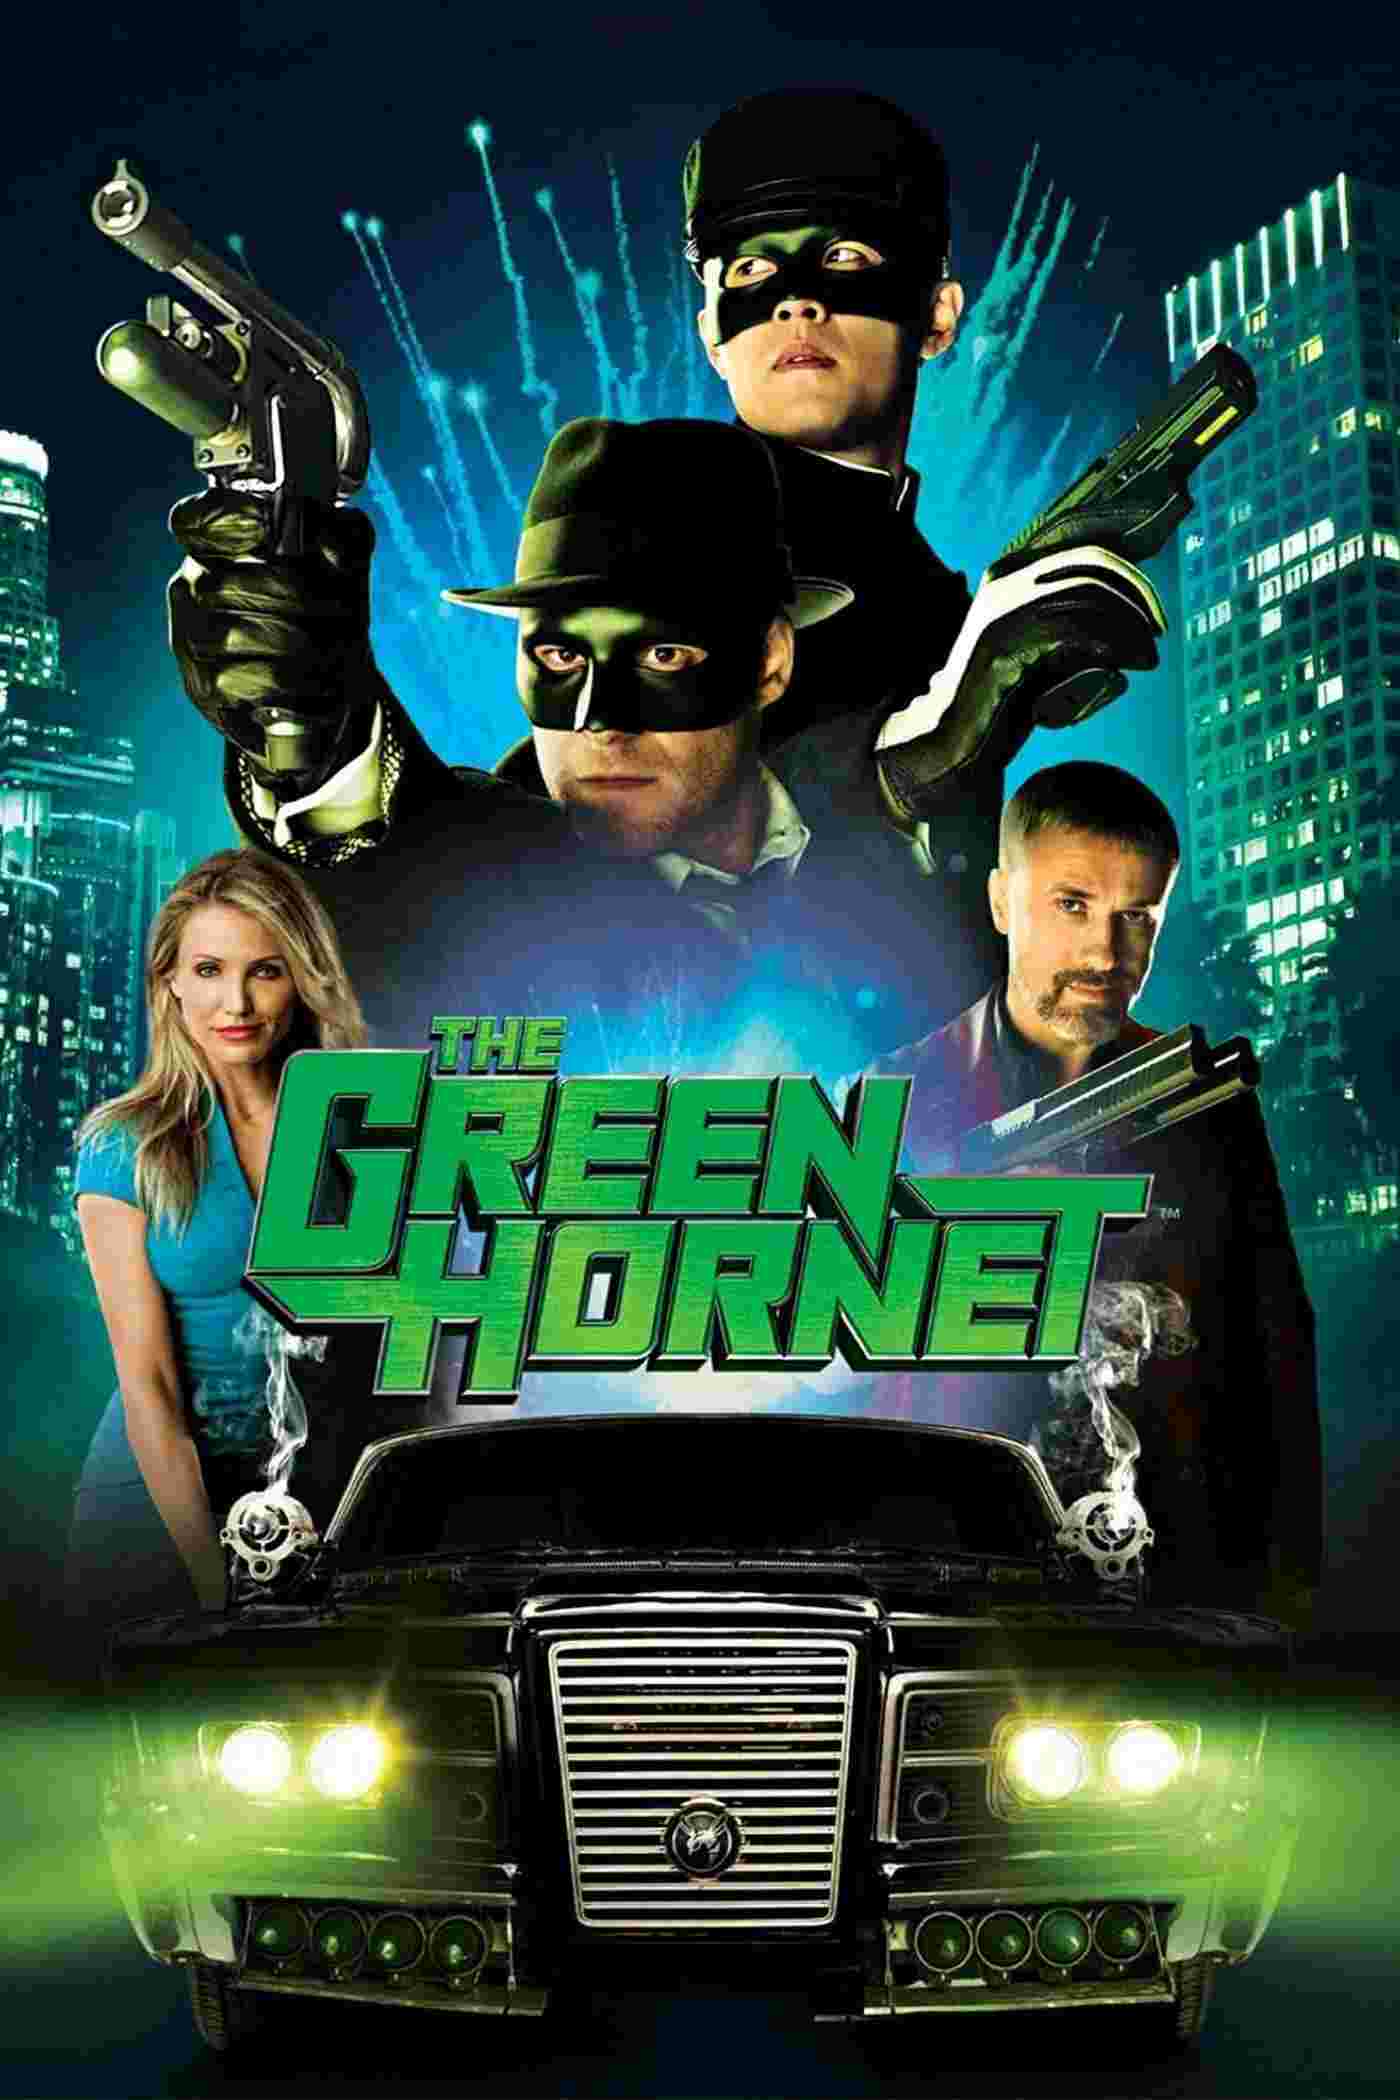 The Green Hornet (2011) Seth Rogen